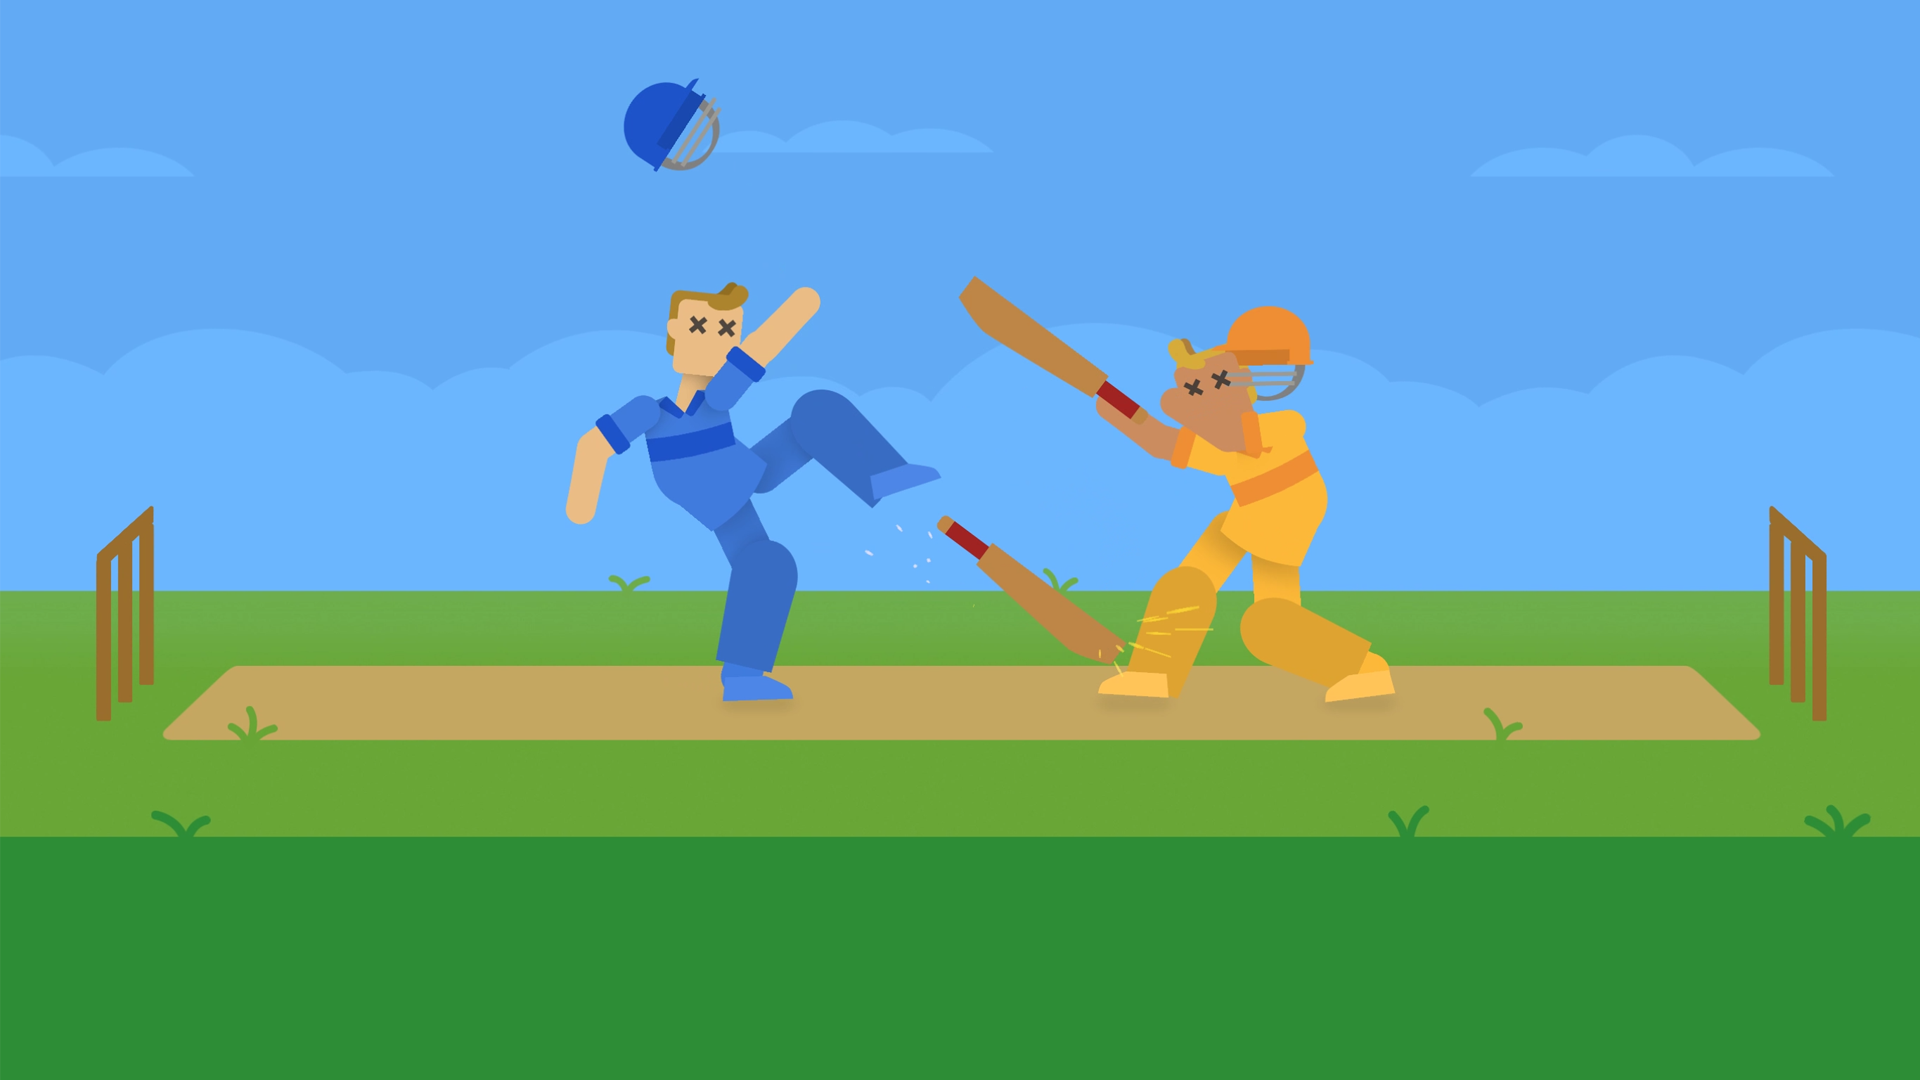 Awalnya Terungkap di Internet Apple Video Arcade Supercut, 'Cricket Through the Ages' dari Devolver Digital Mendapat Trailer Pertama Menjelang Peluncurannya Segera